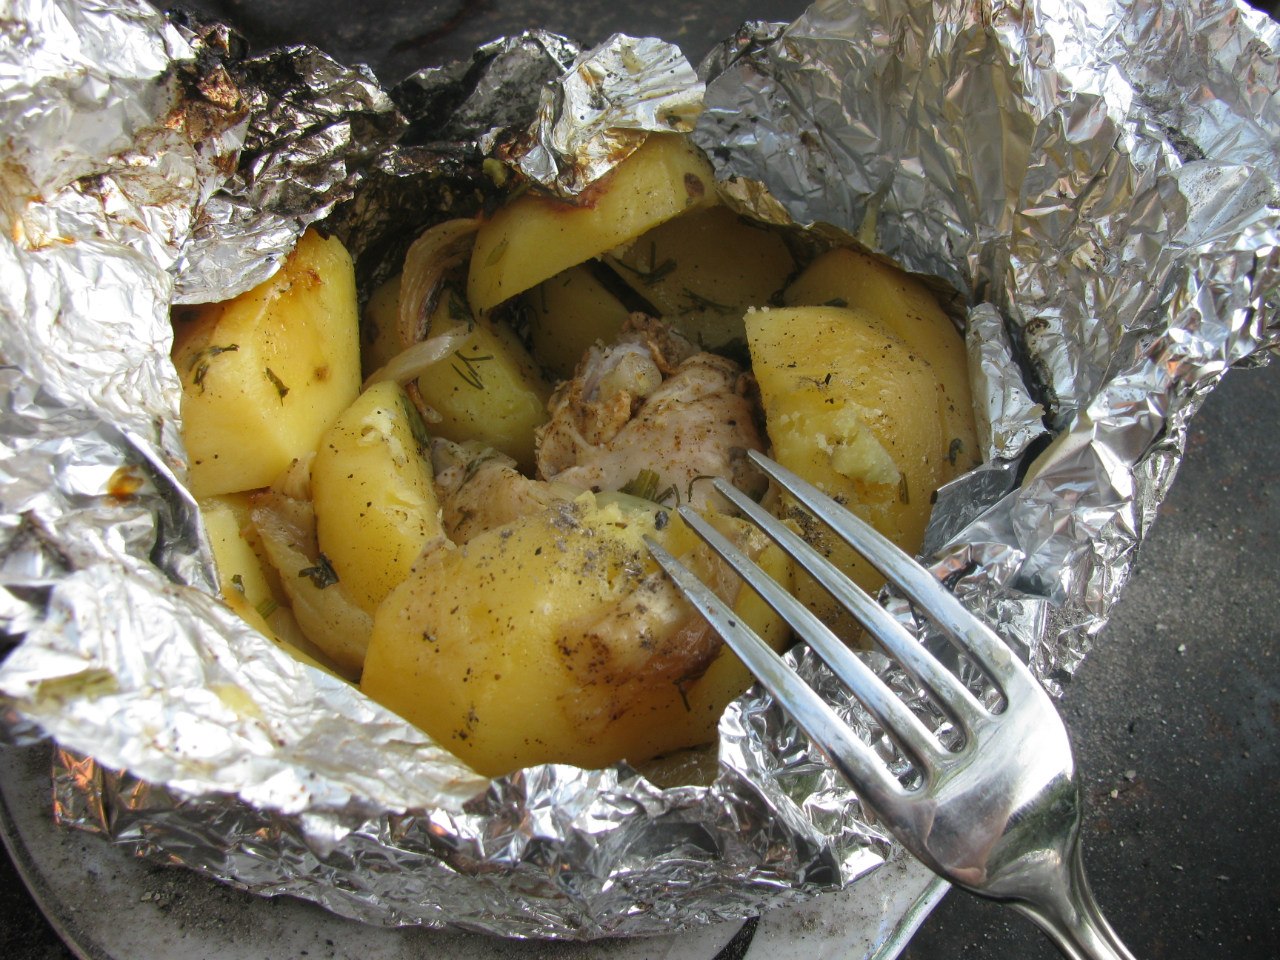 Картошка в духовке в фольге целиком в мундире запеченная рецепт с фото пошагово